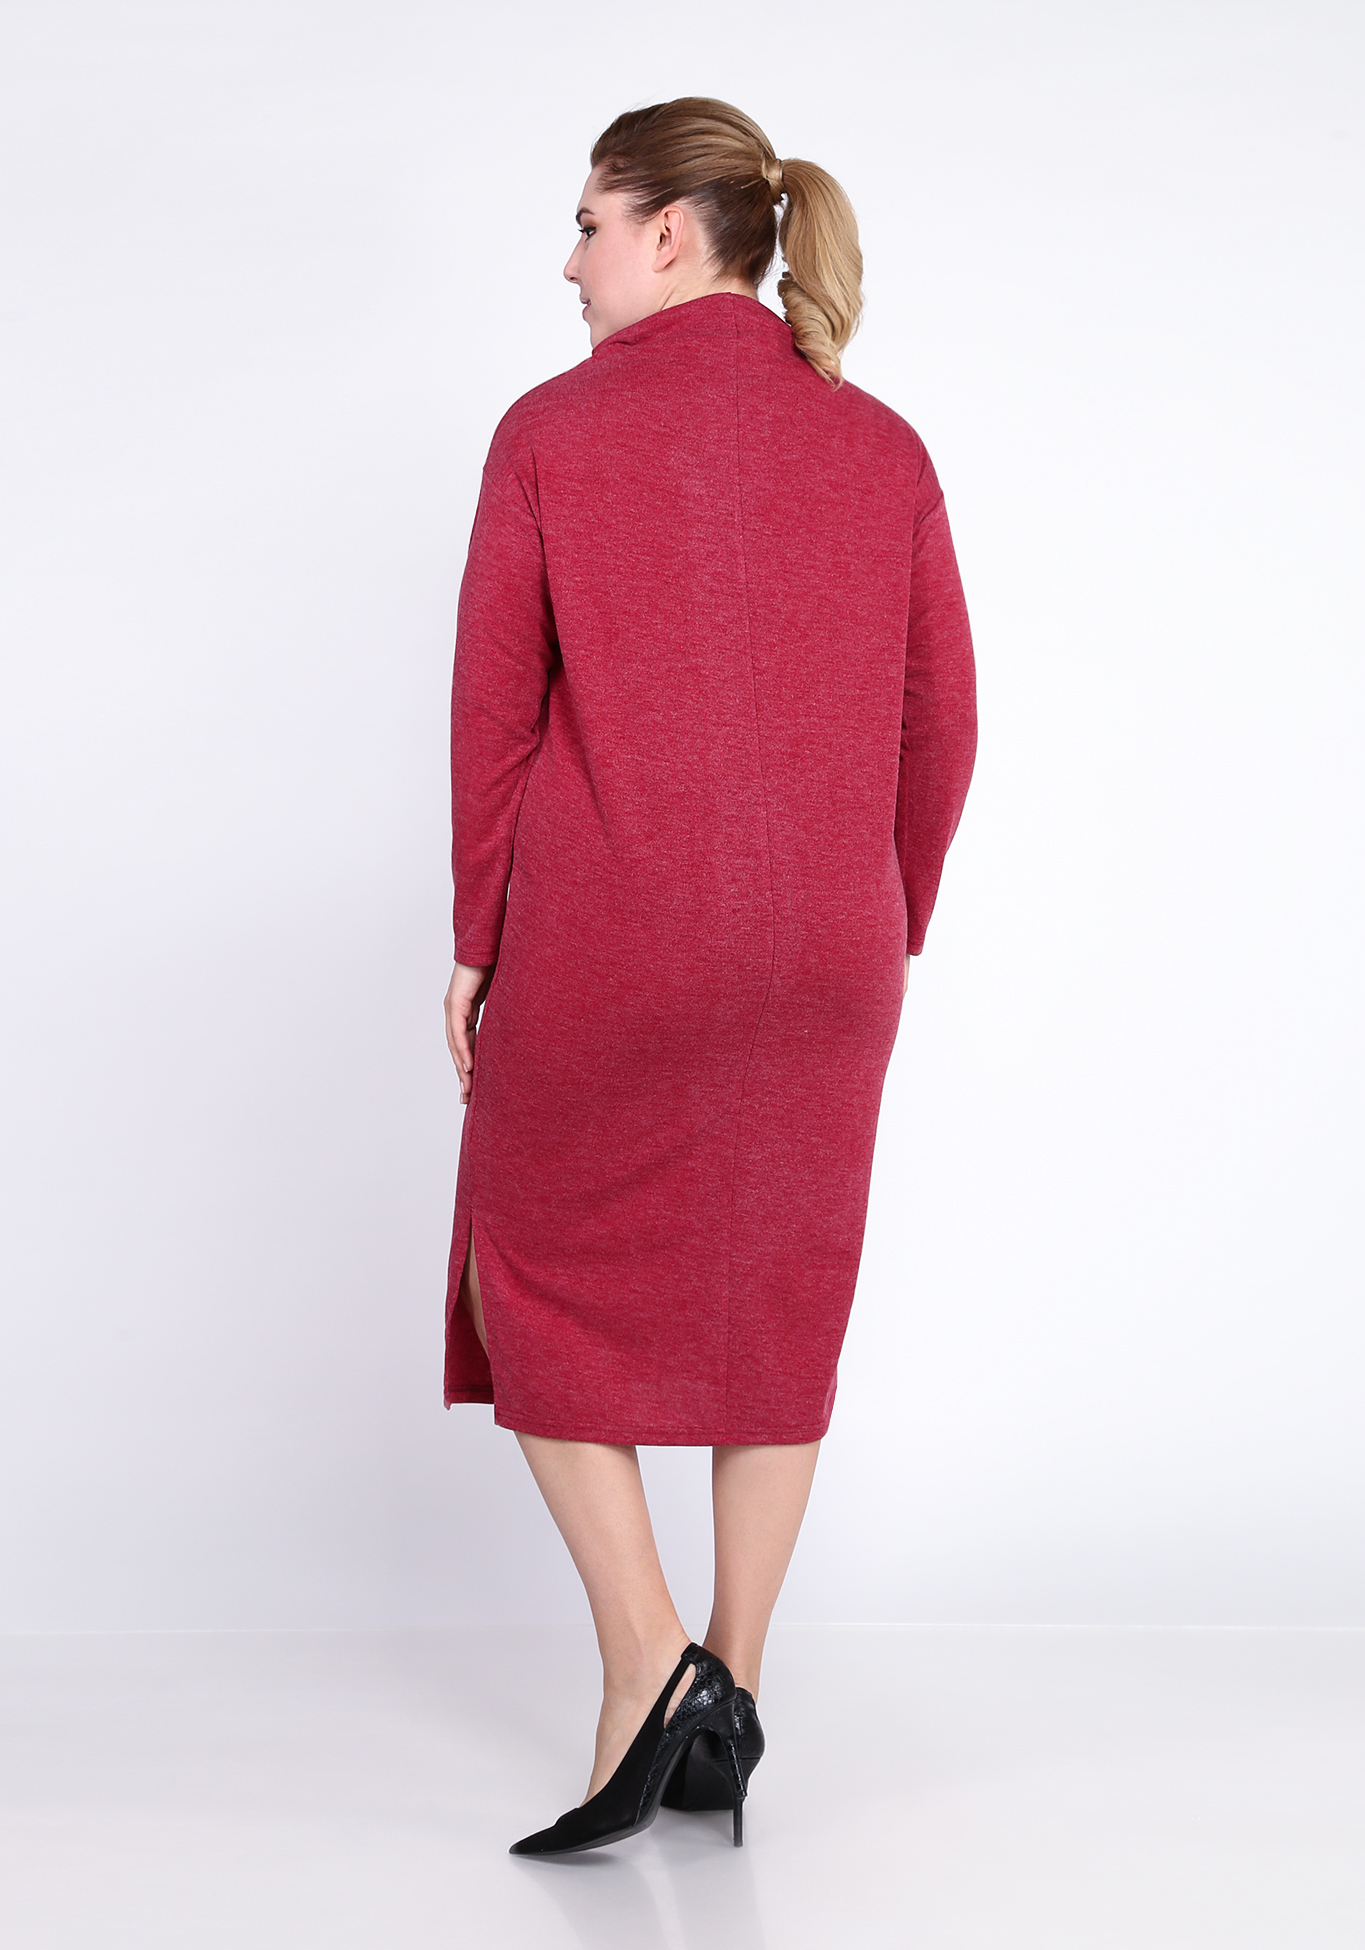 Платье с разрезом сбоку Alex Voice Collection, размер 50, цвет ягодный - фото 9